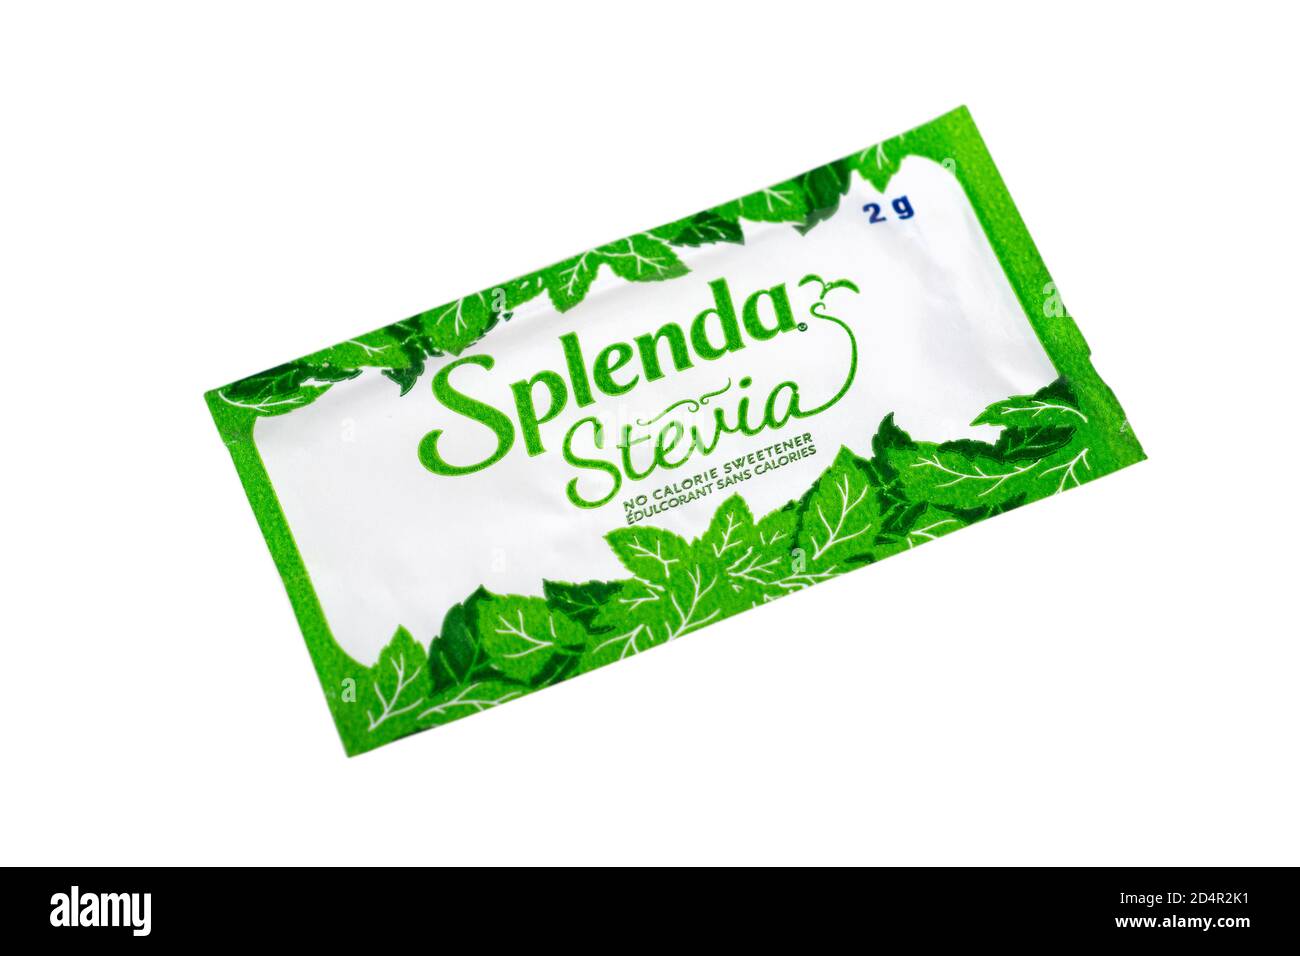 Paquet de Splenda Stevia, sans sucre sans calories édulcorant artificiel Banque D'Images